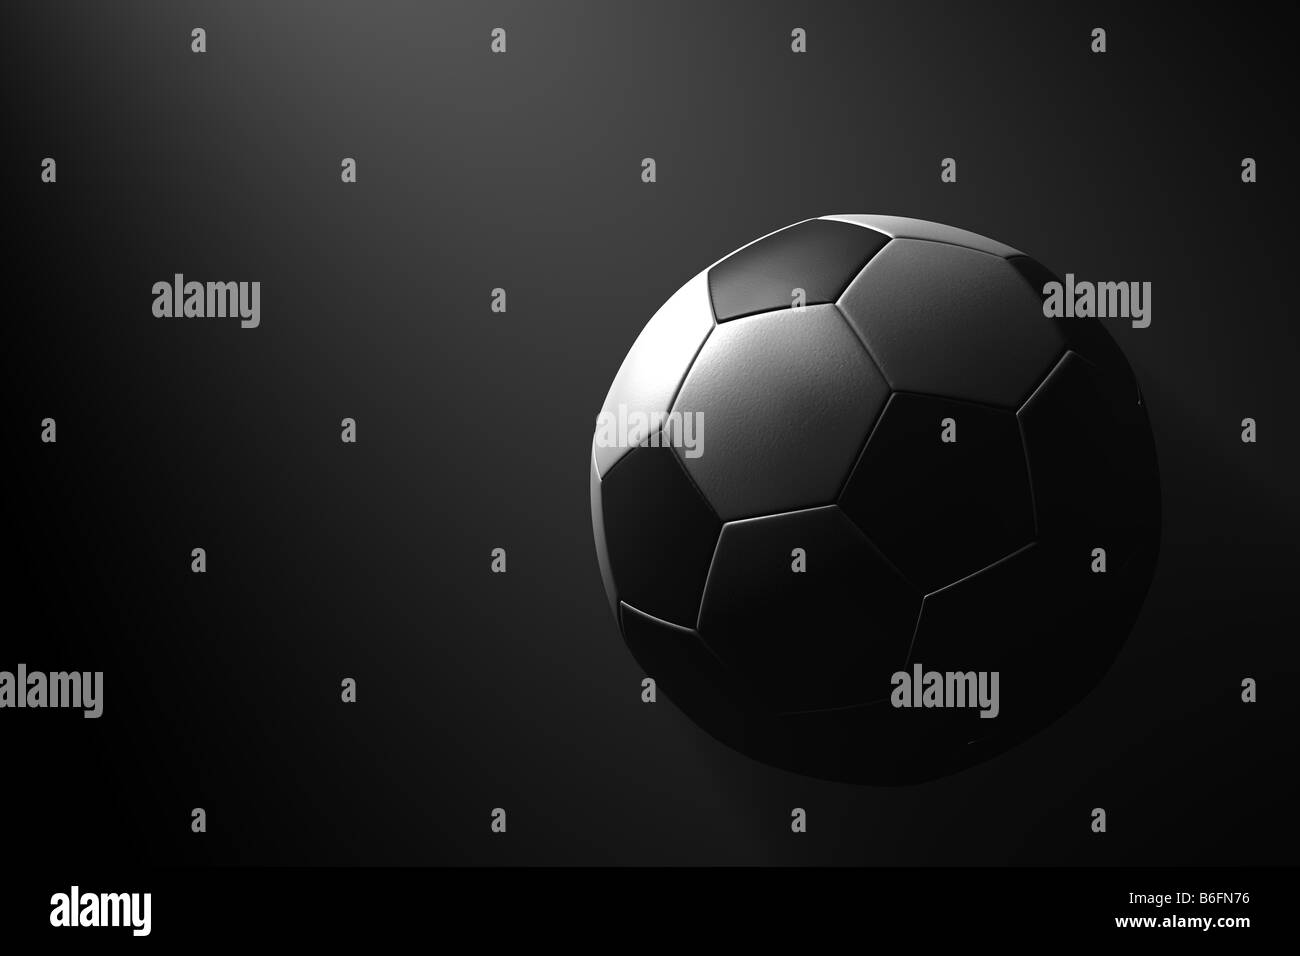 Ballon de soccer sur fond noir Banque D'Images